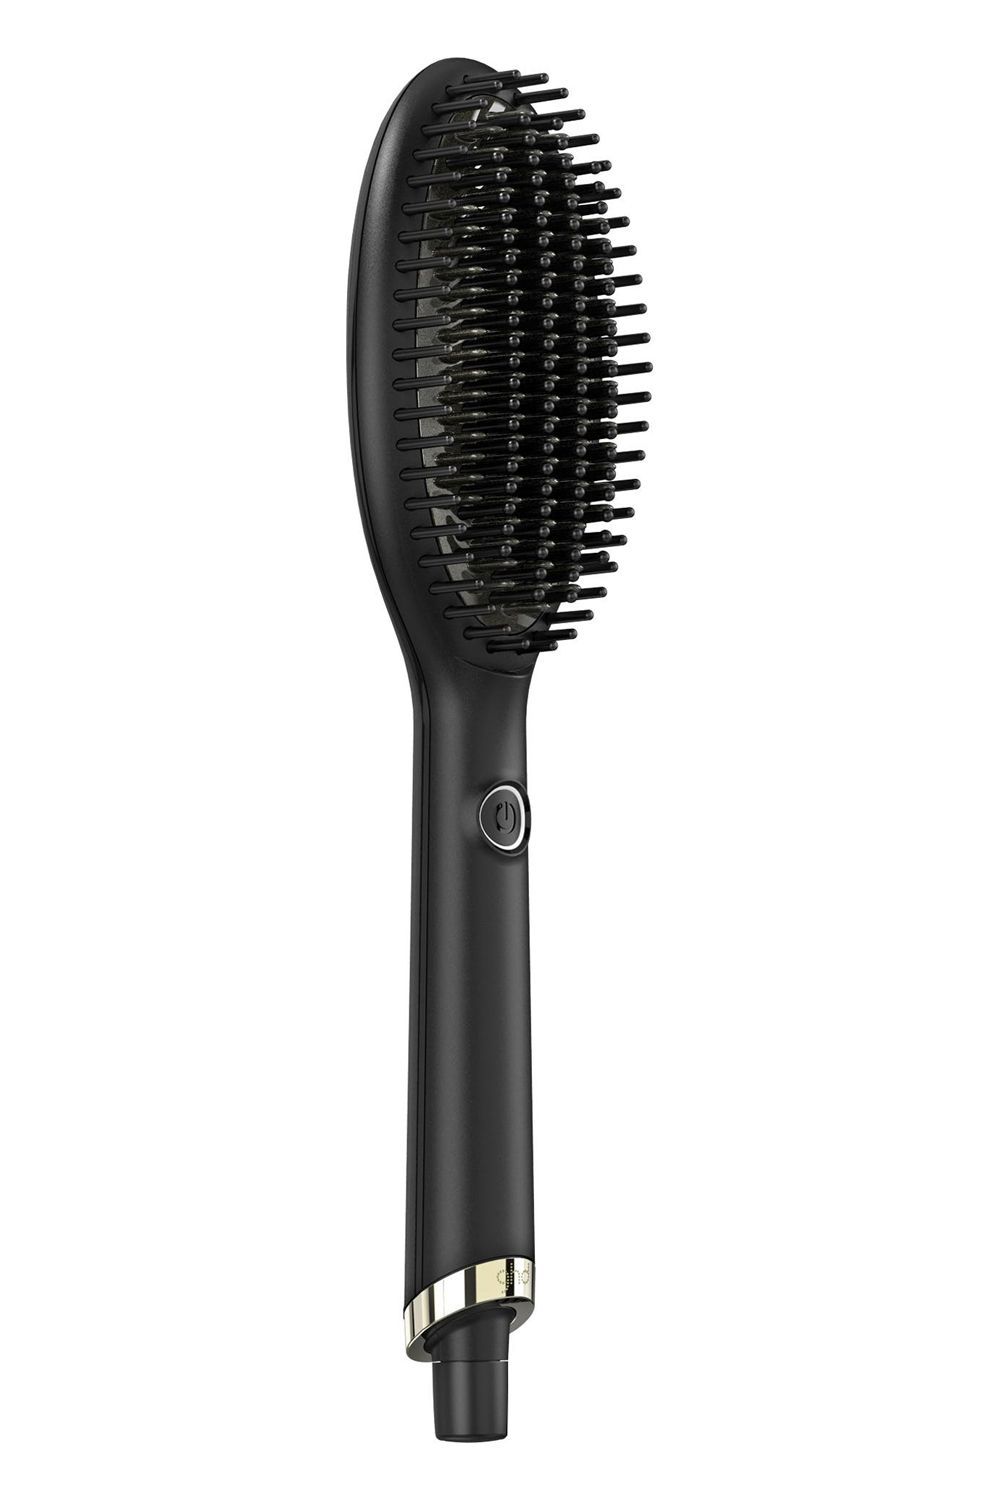 23 Best Hair Straightener Brushes for All Hair Types of 2023